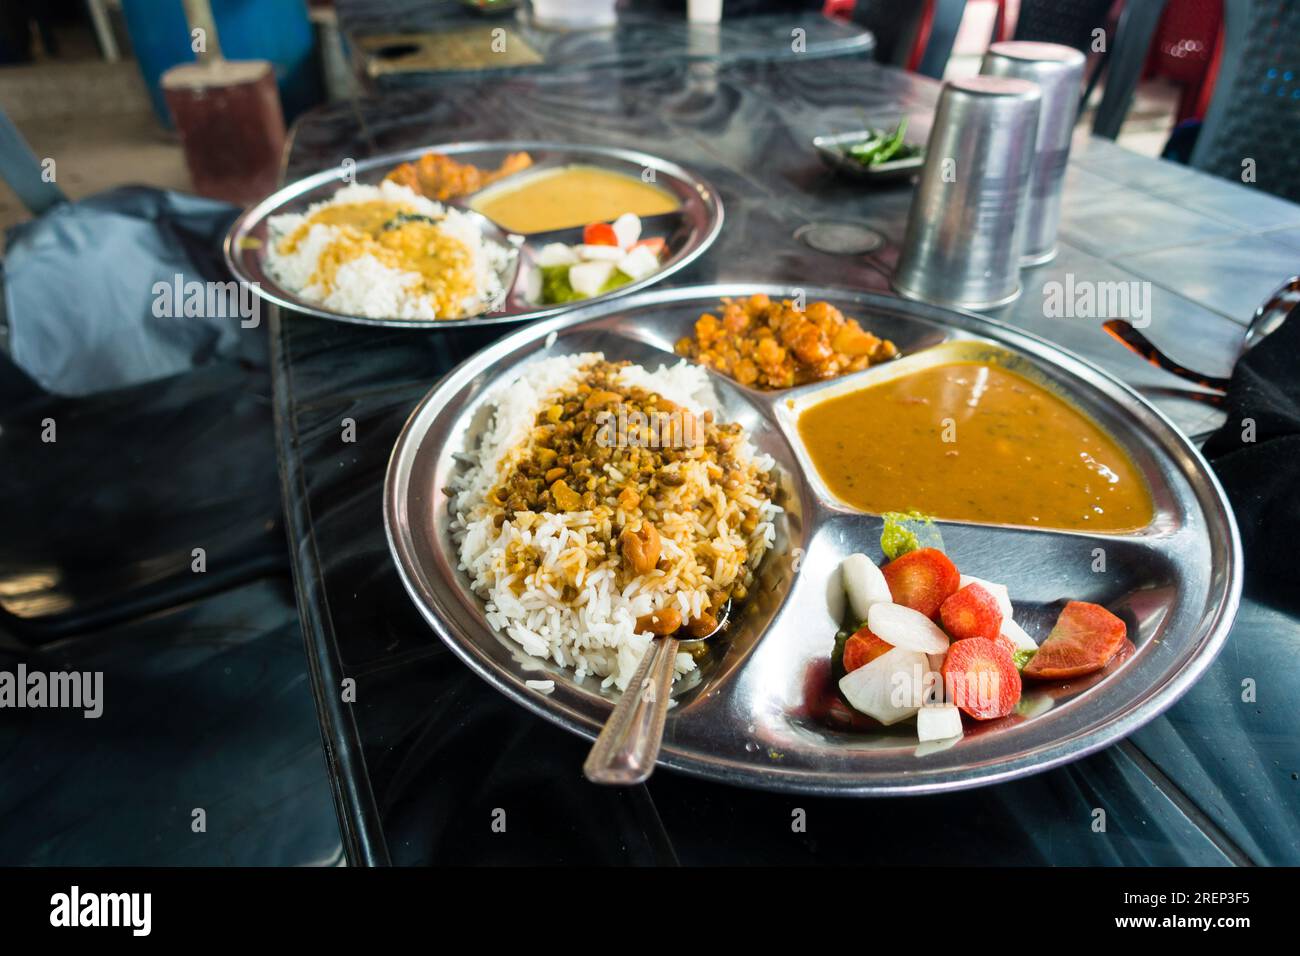 Délicieux plat du Nord indien : Dal, riz et salade dans un restaurant rustique Dhaba en bordure de route à Uttarakhand, en Inde. Cuisine locale alléchante. Banque D'Images